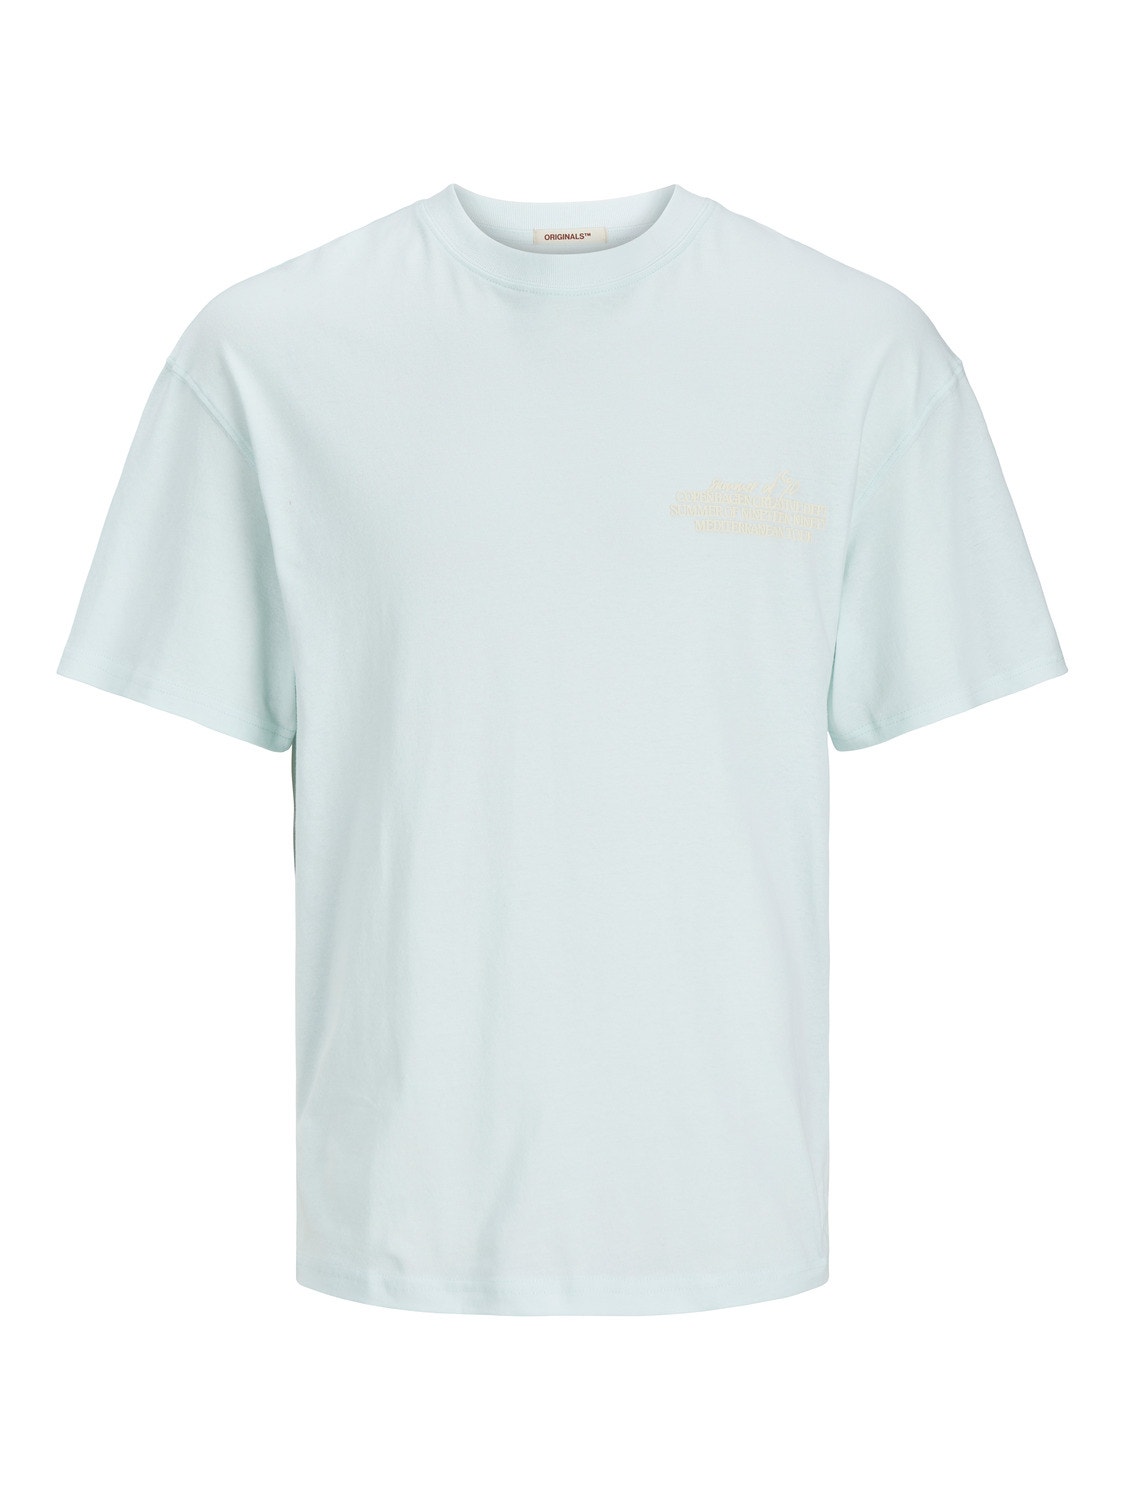 Jack & Jones Nadruk Okrągły dekolt T-shirt -Skylight - 12256289